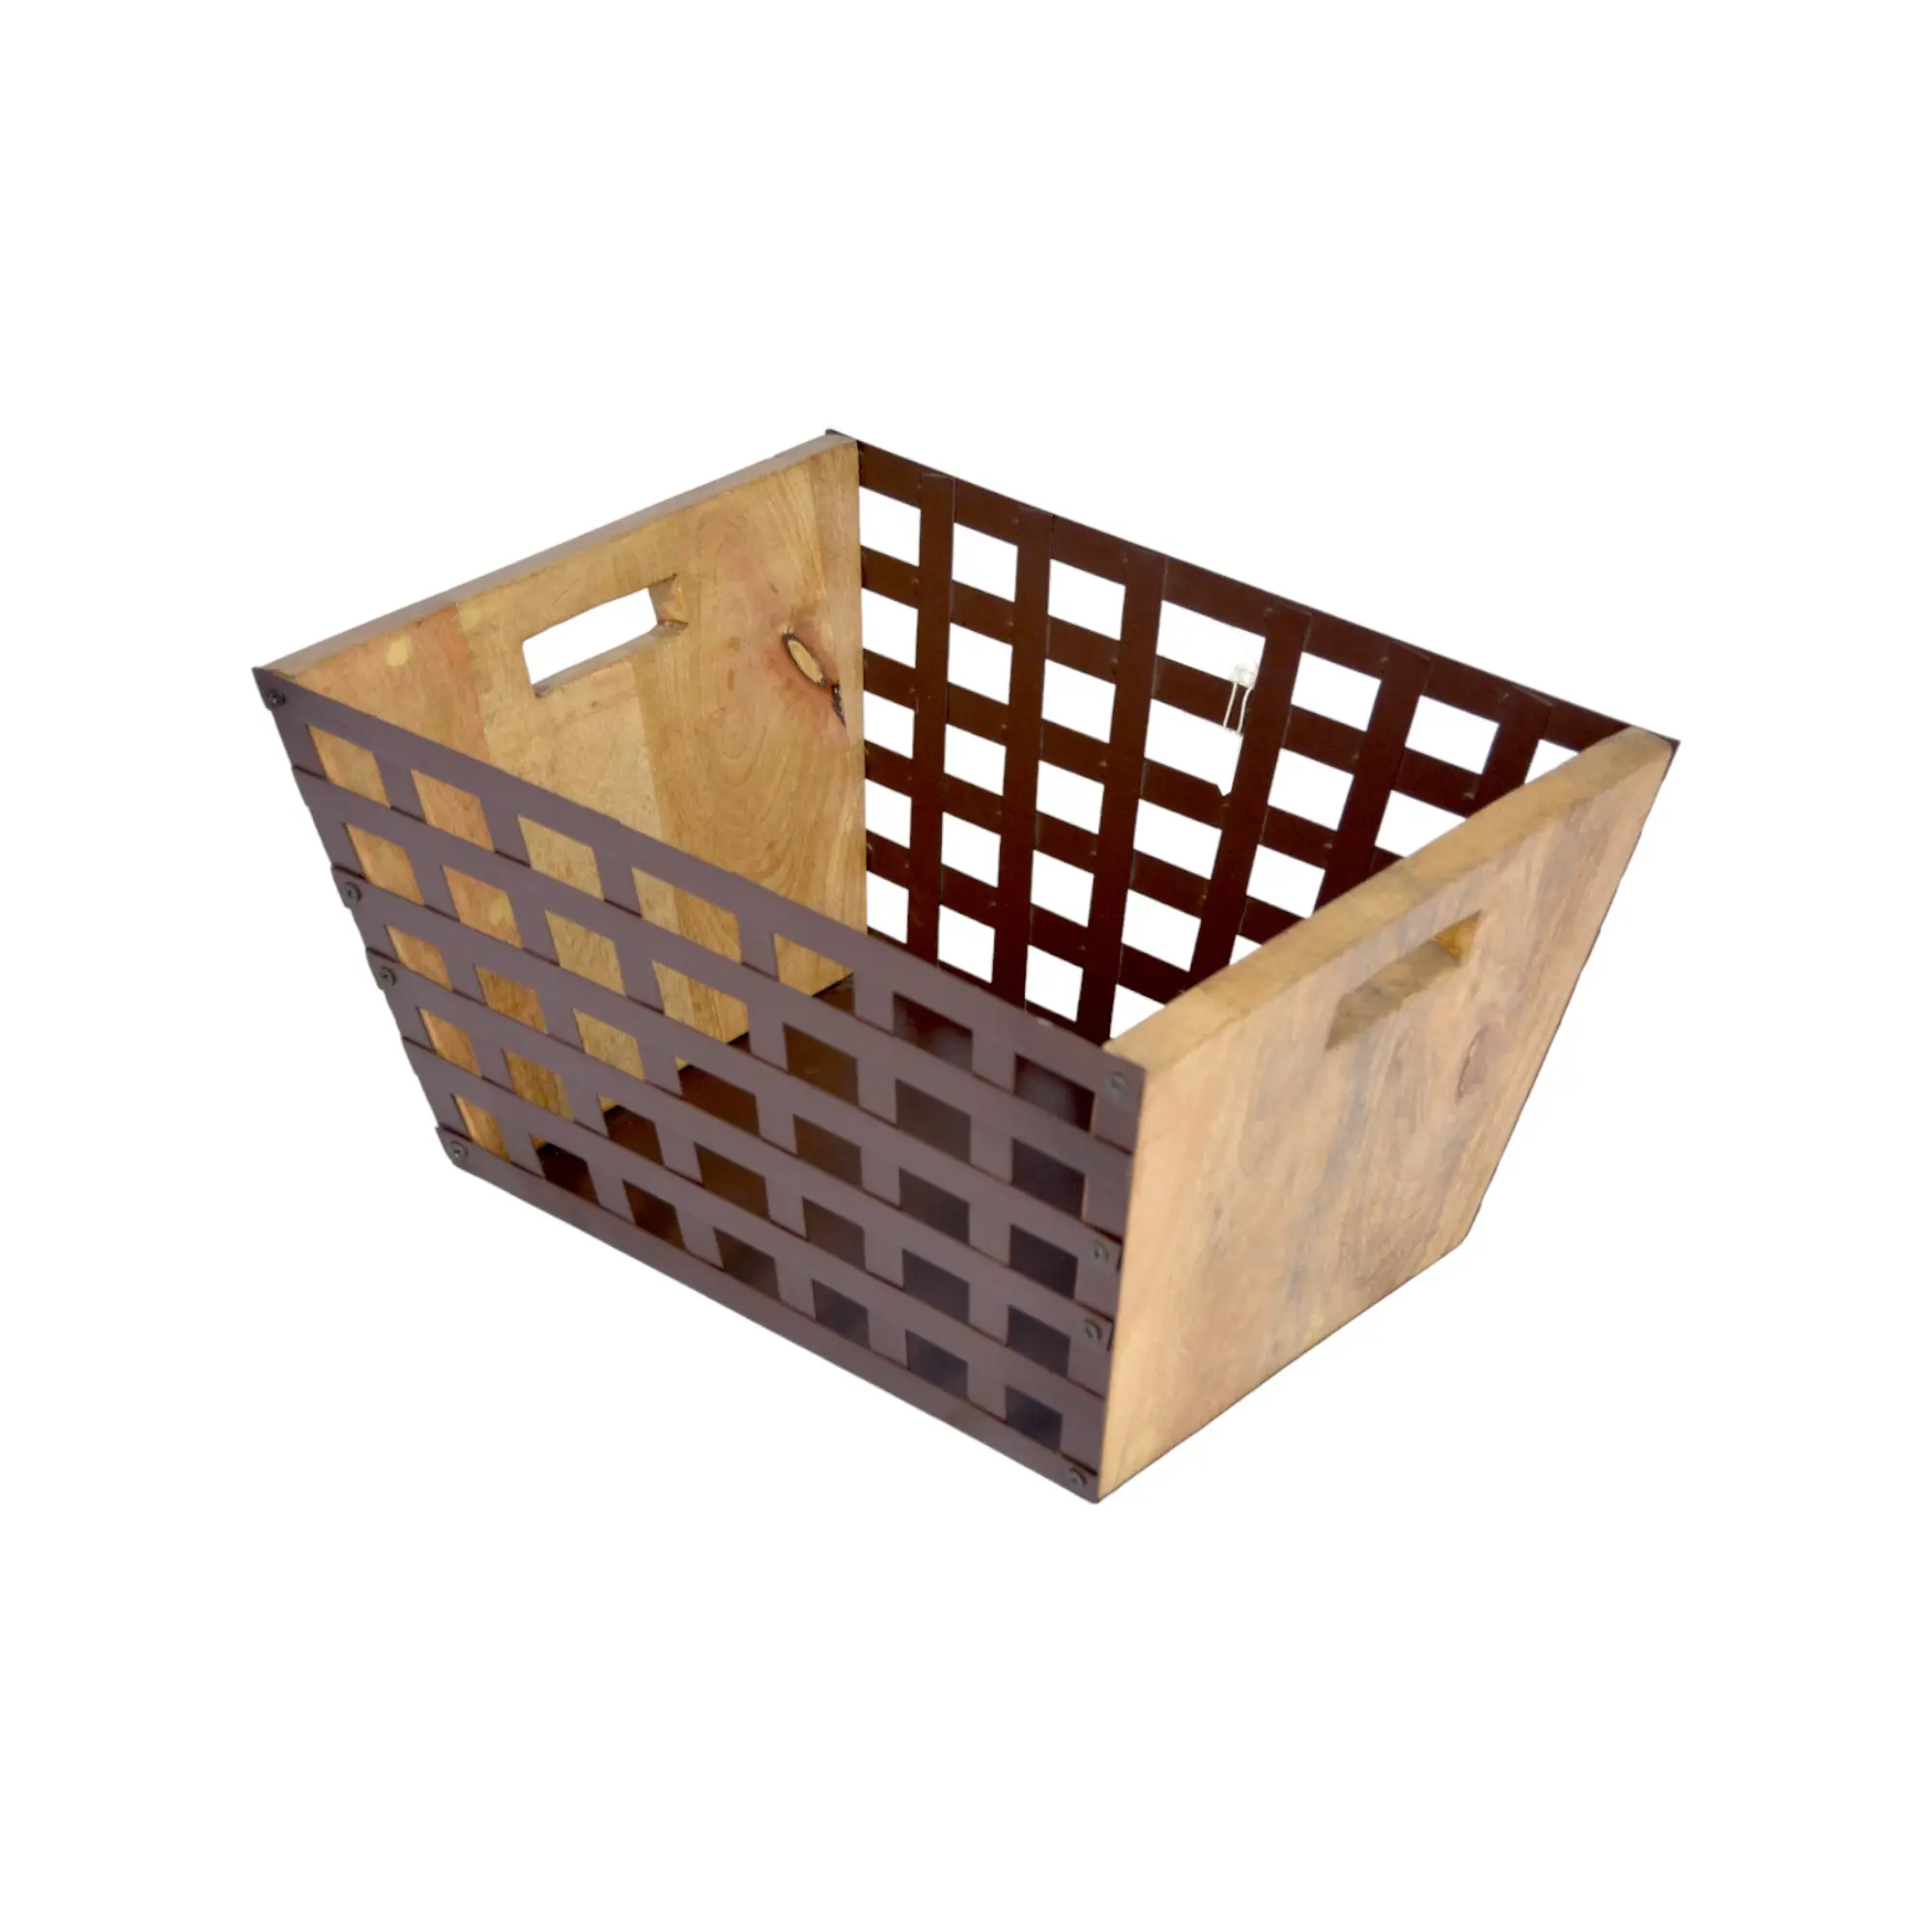 سلة خشبية مربعة معدنية مع مواد من القطن بسعة 5 مم تسمح بعدالات الأبعاد لأثاث المنزل وتخزين الخضراوات والفاكهة في المطبخ تُباع بالجملة